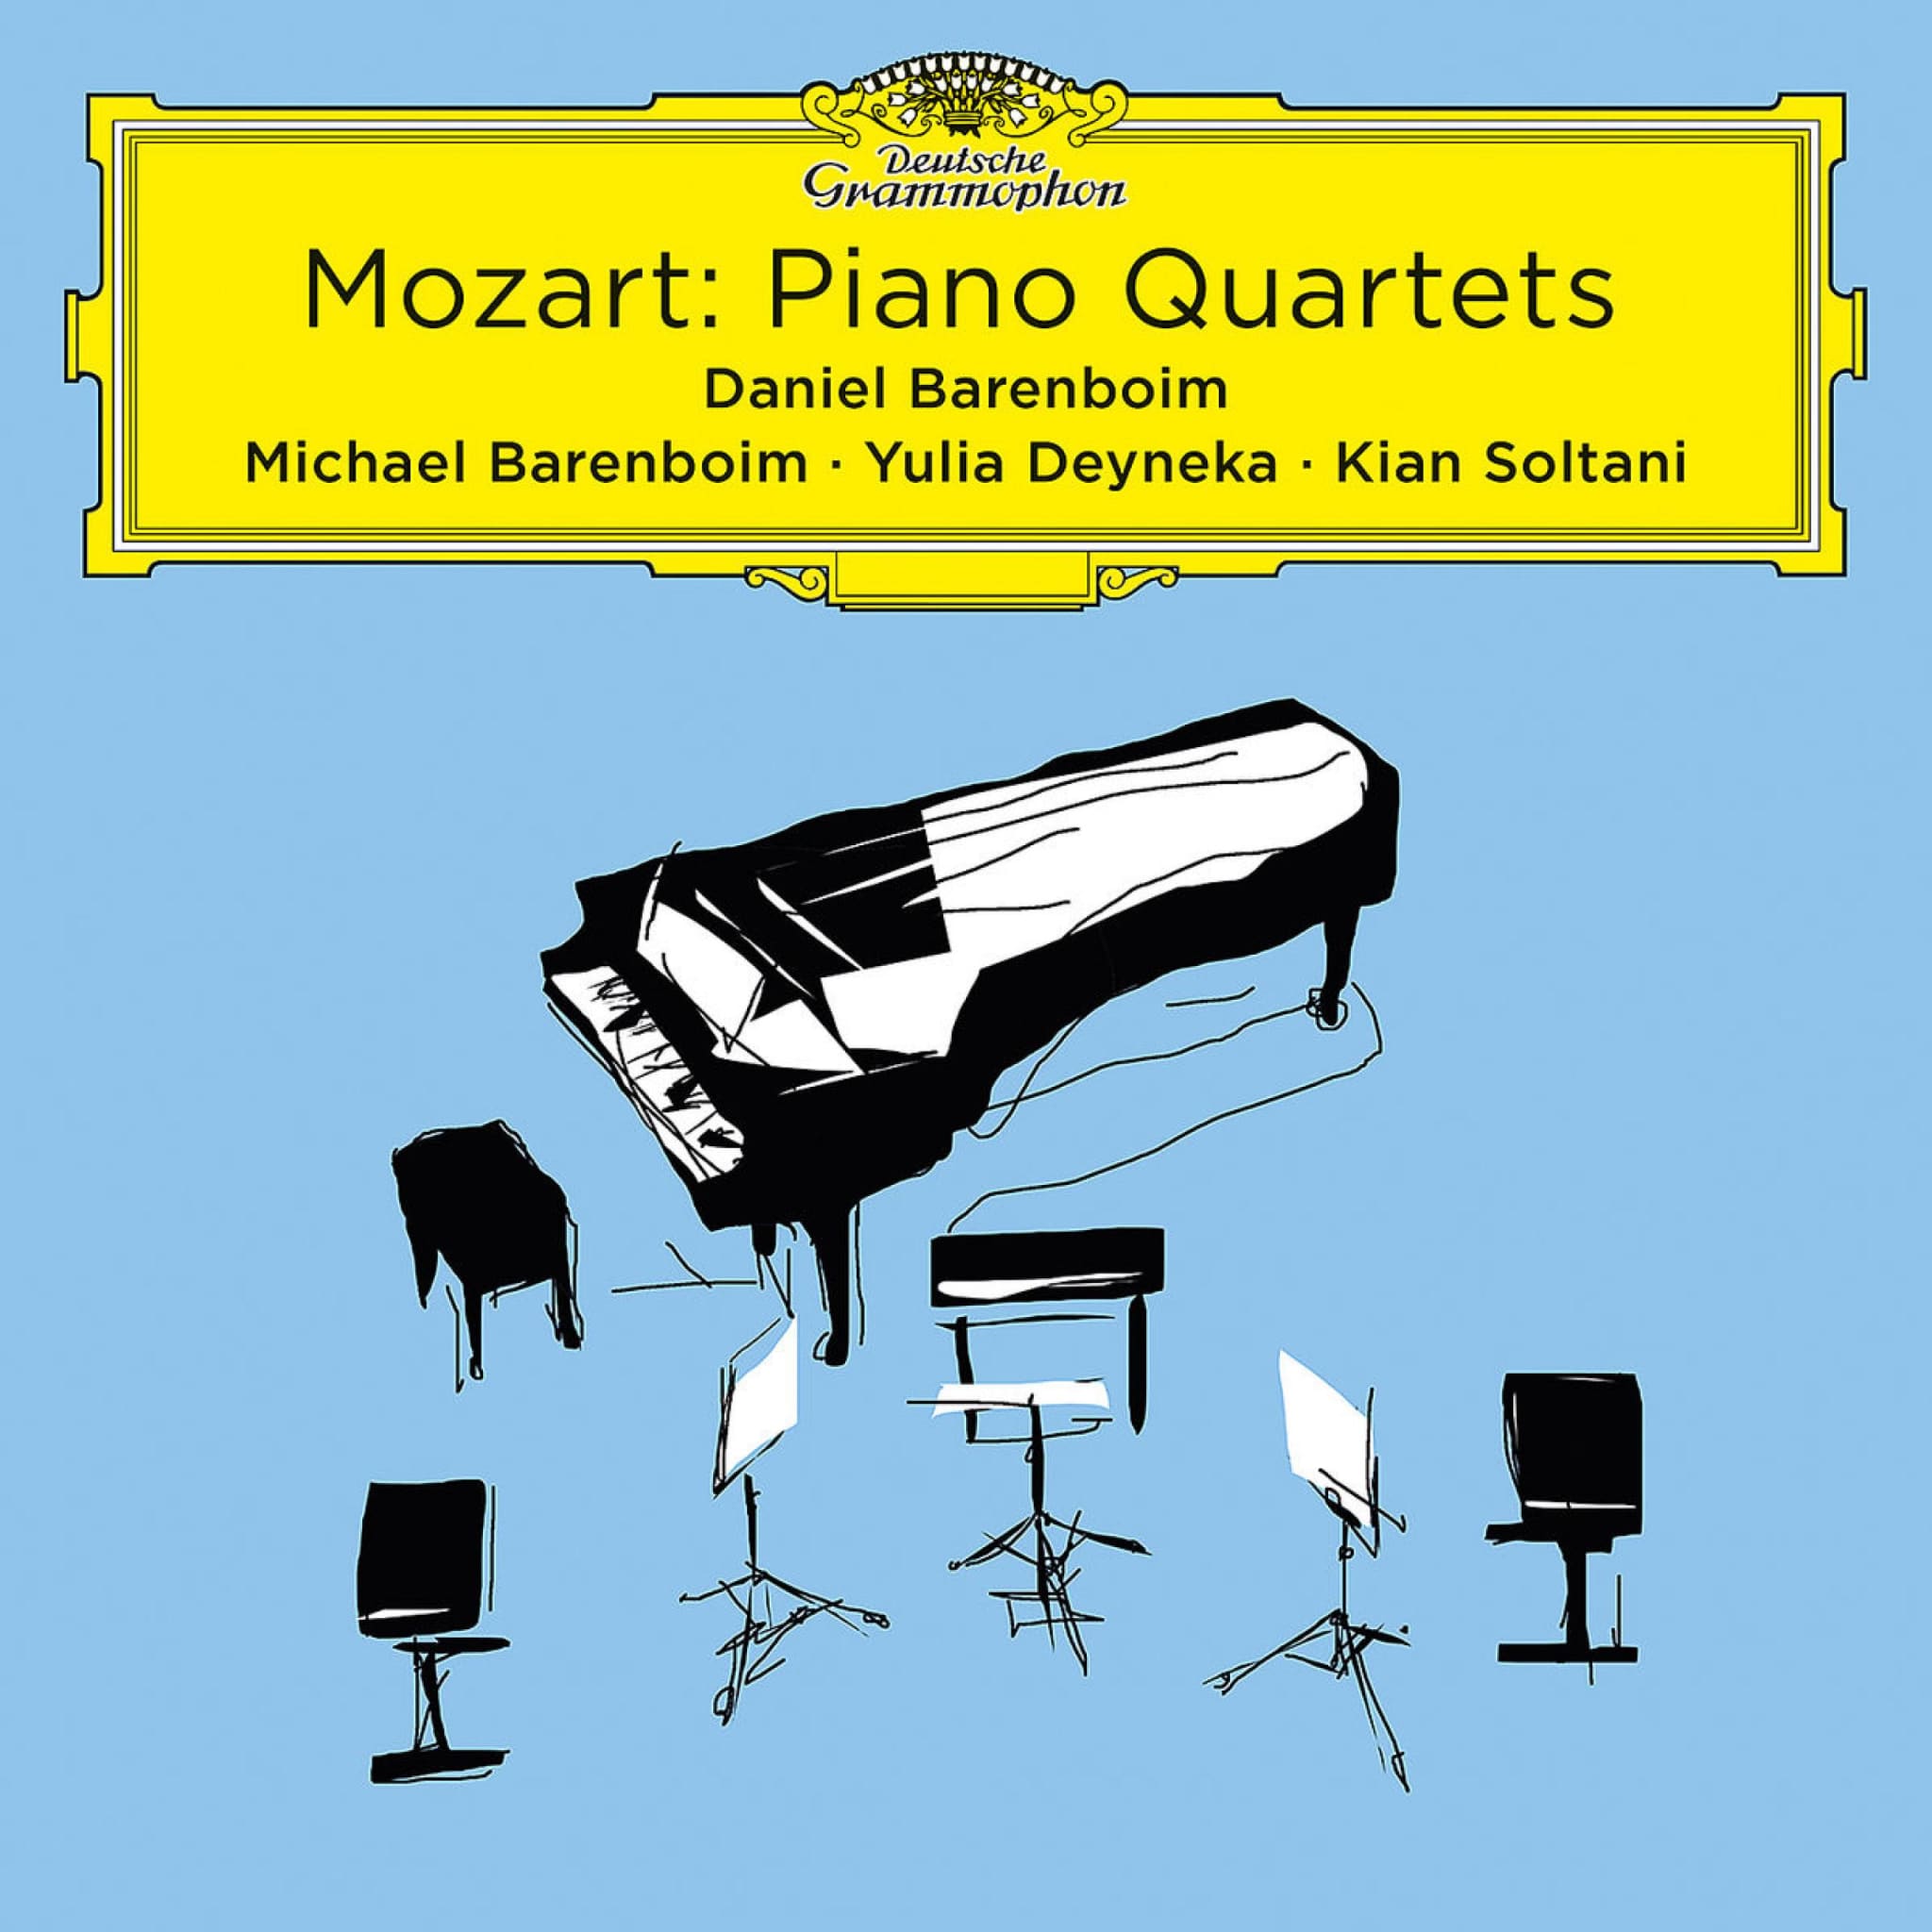 Mozart: Piano Quartets (Live At Pierre Boulez Saal)